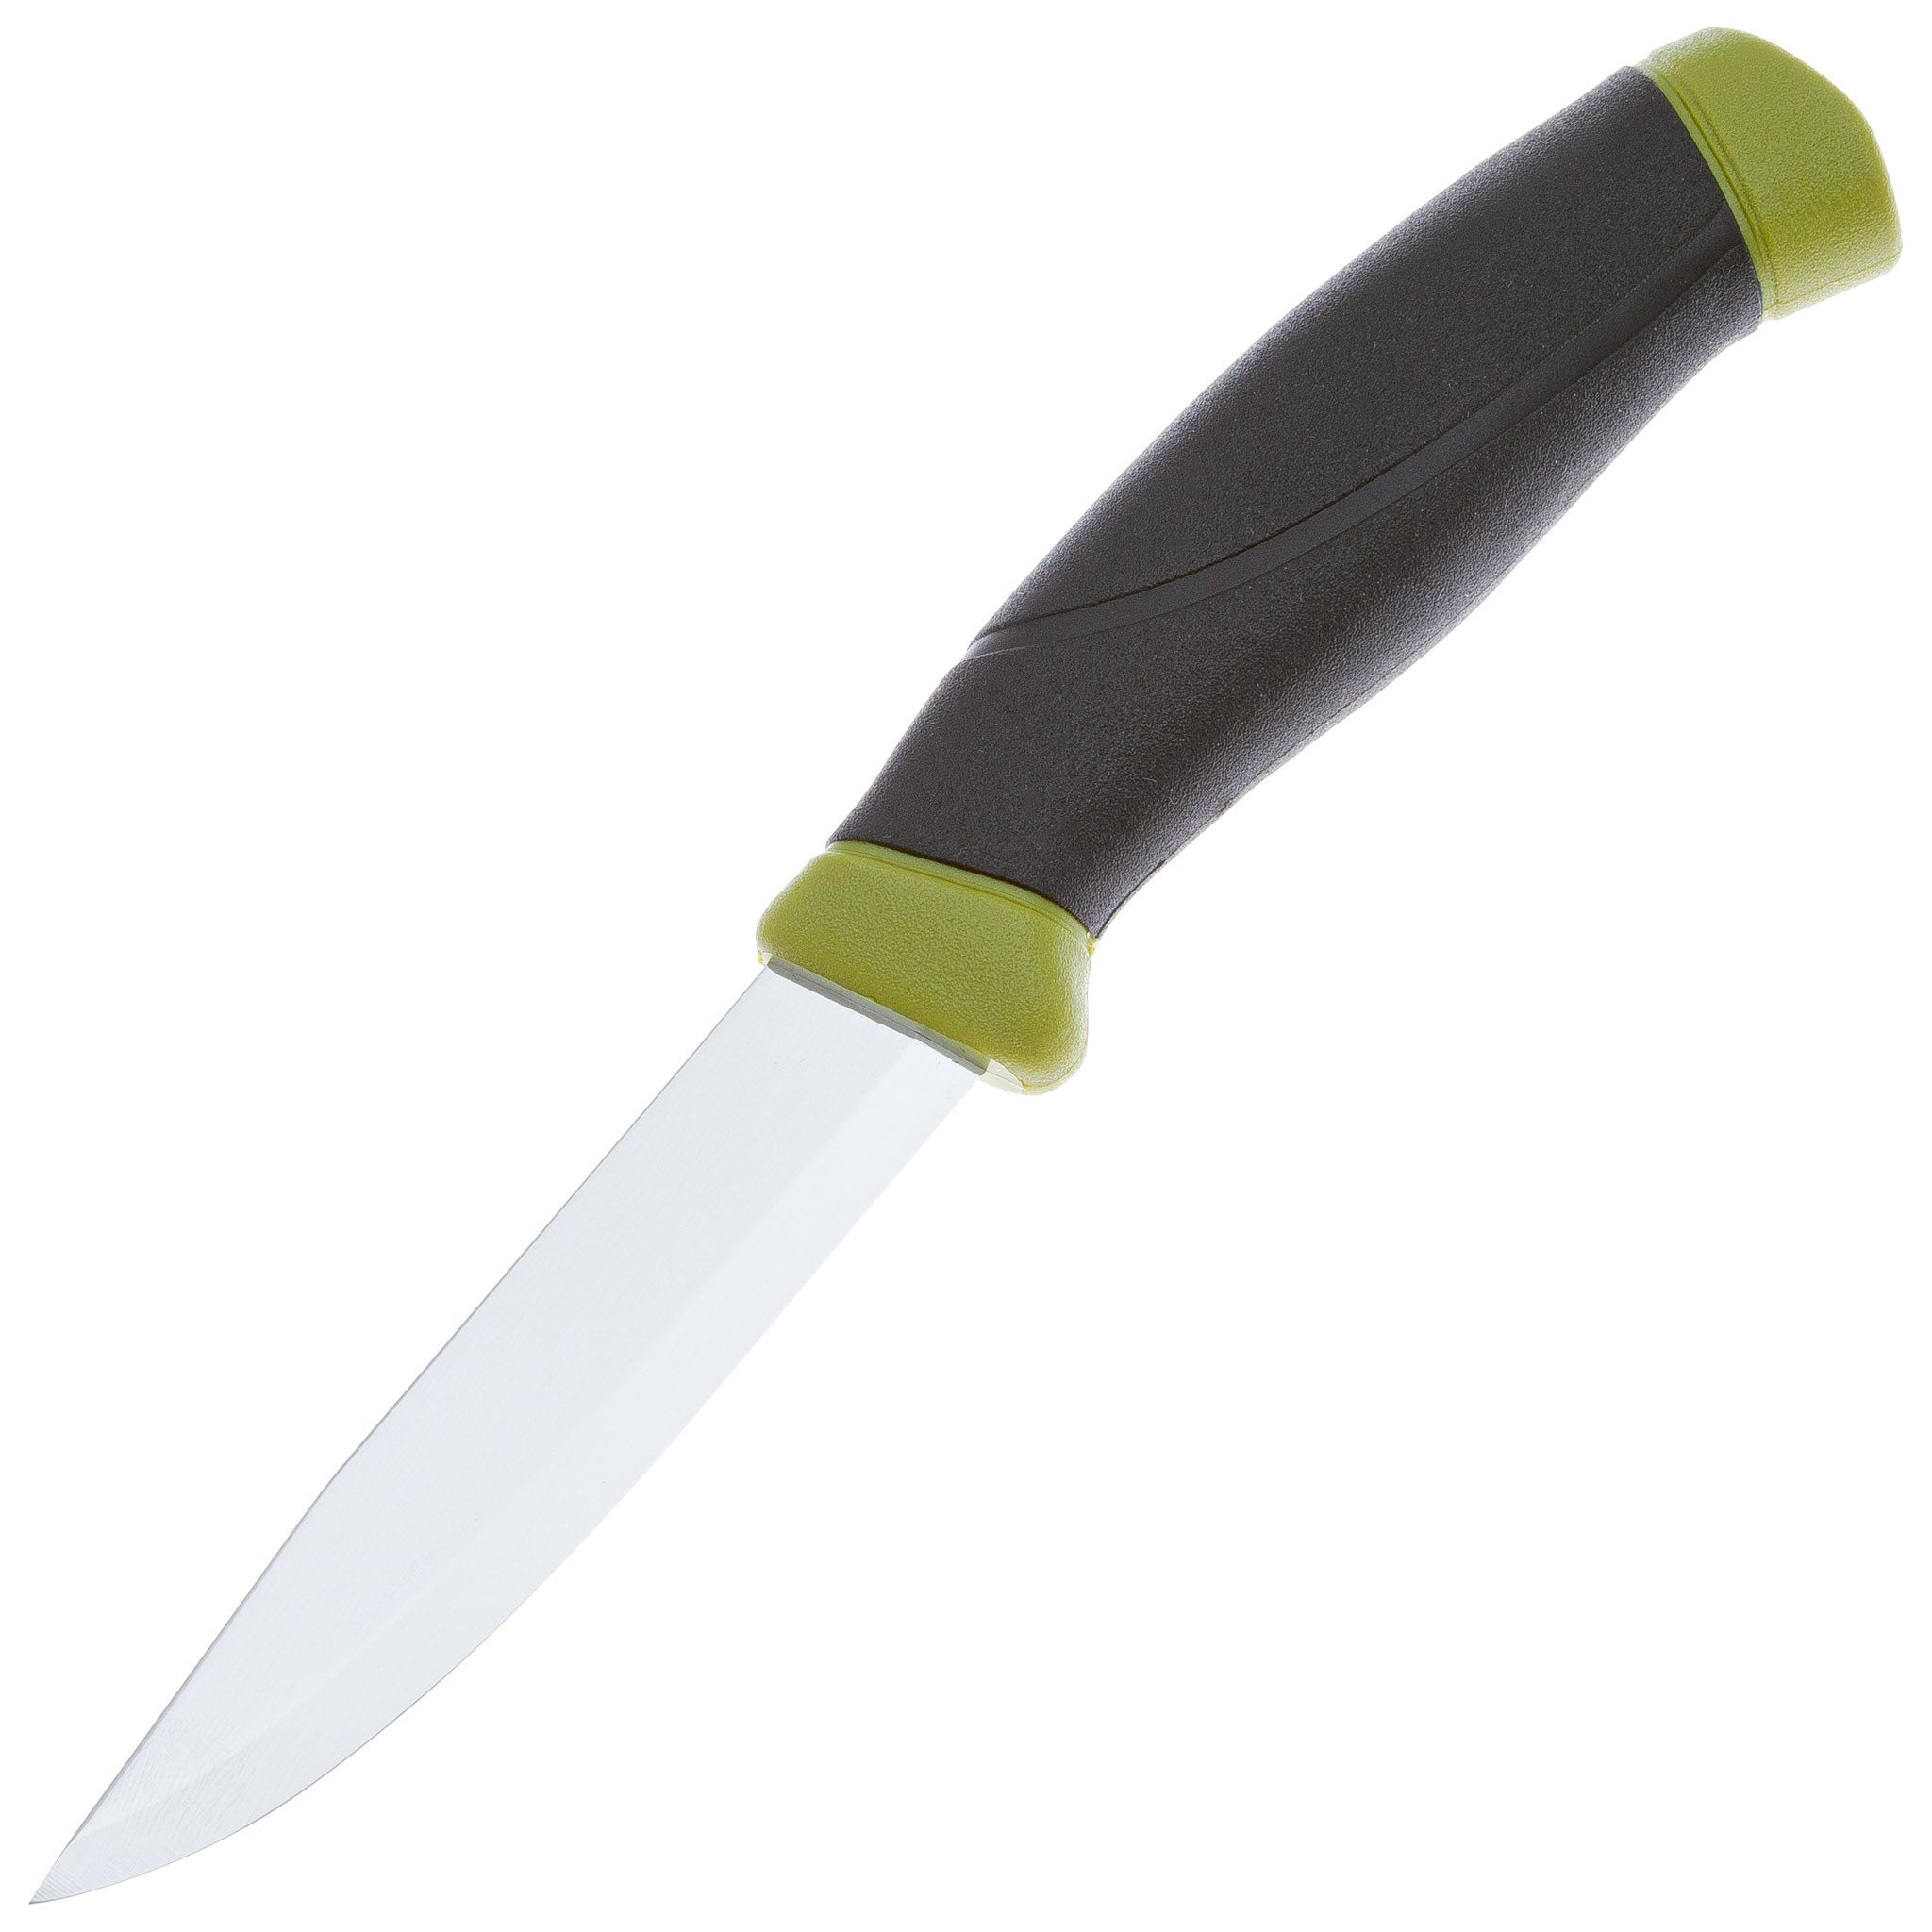 Нож с фиксированным лезвием Morakniv Companion, сталь Sandvik 12C27, рукоять резина, olive green нагрудник бандана непромокаемый